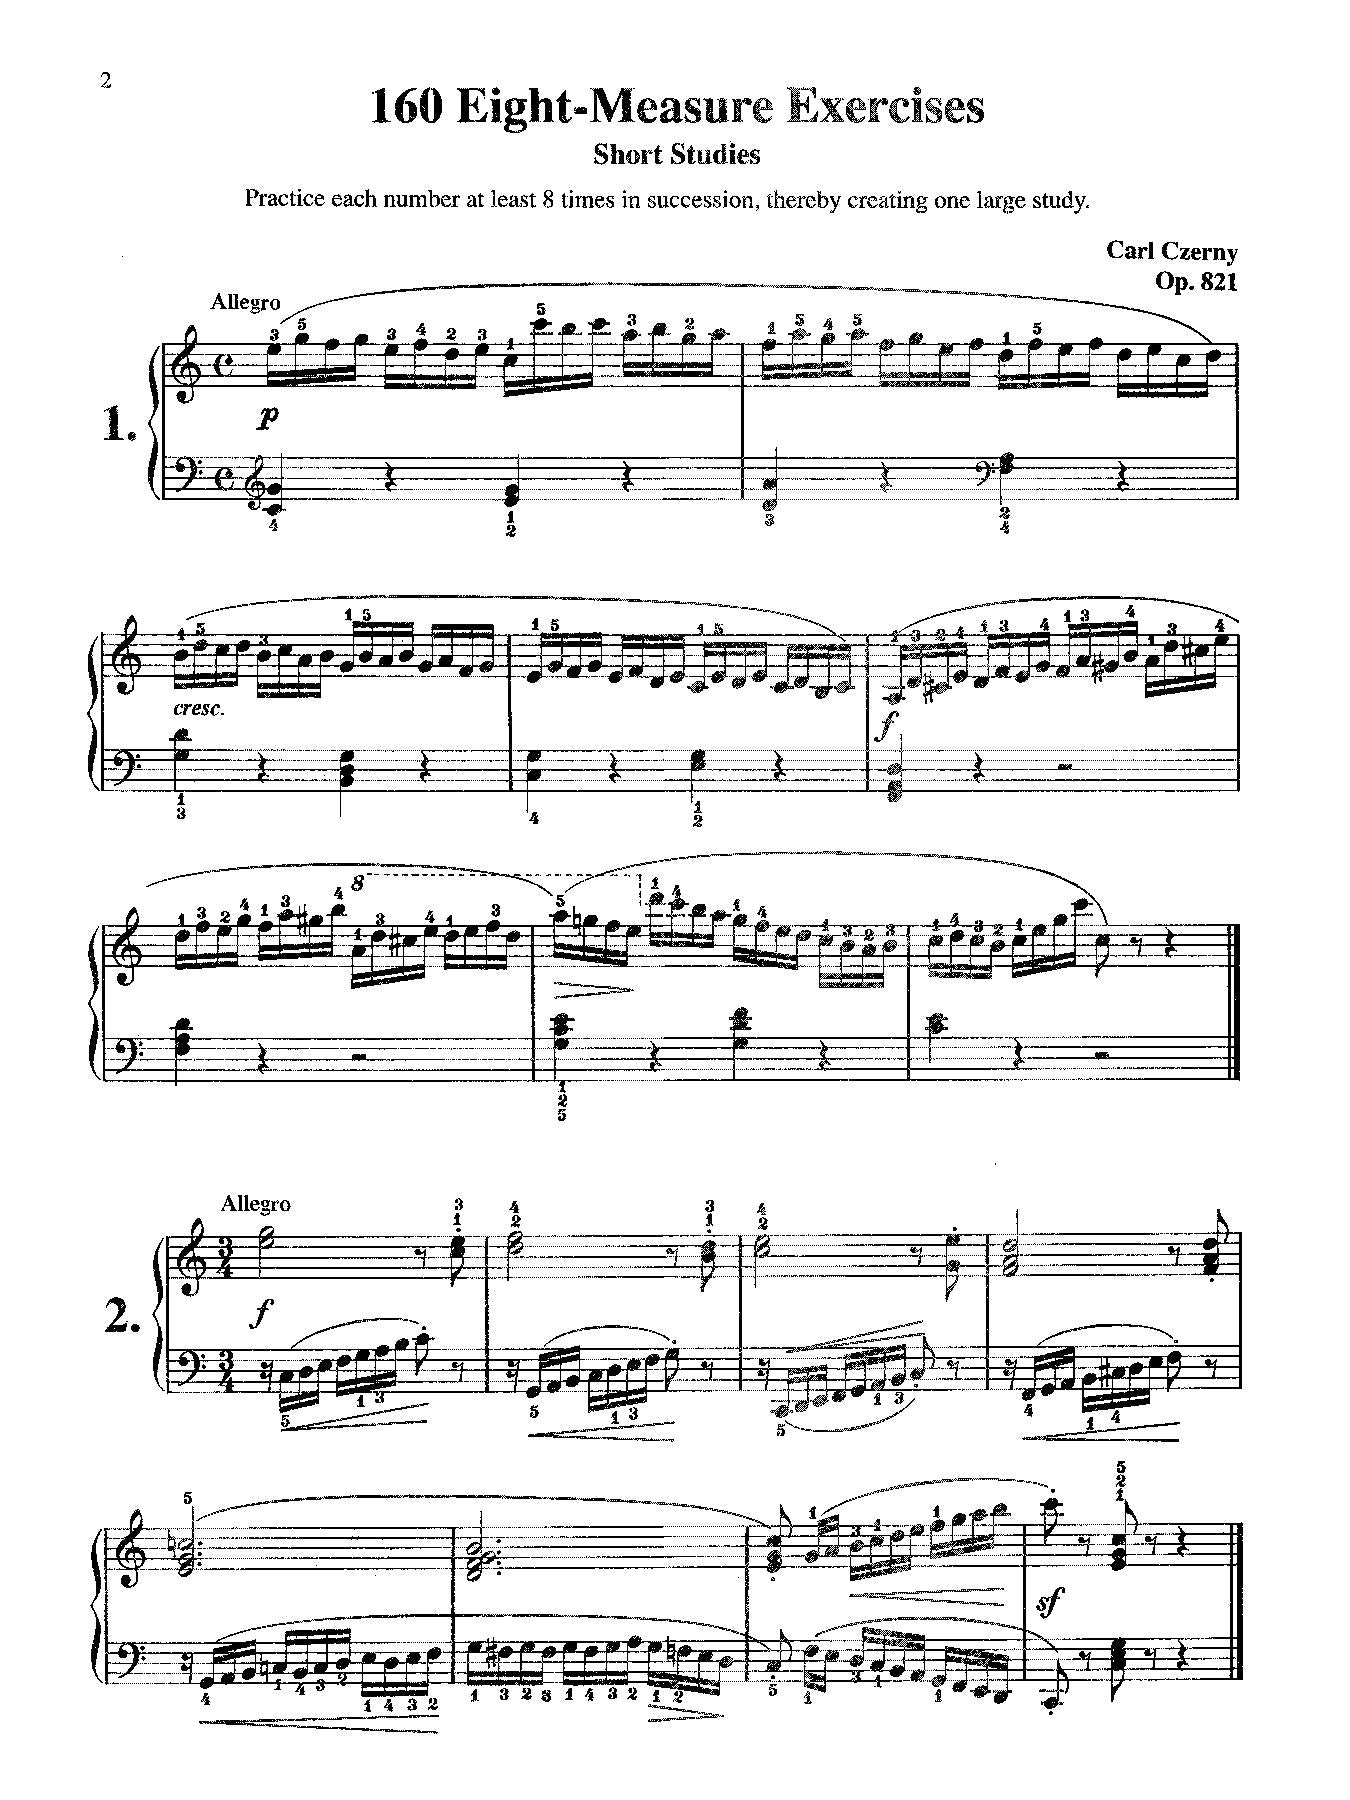 Czerny: 160 8-Measure Exercises, Opus 821